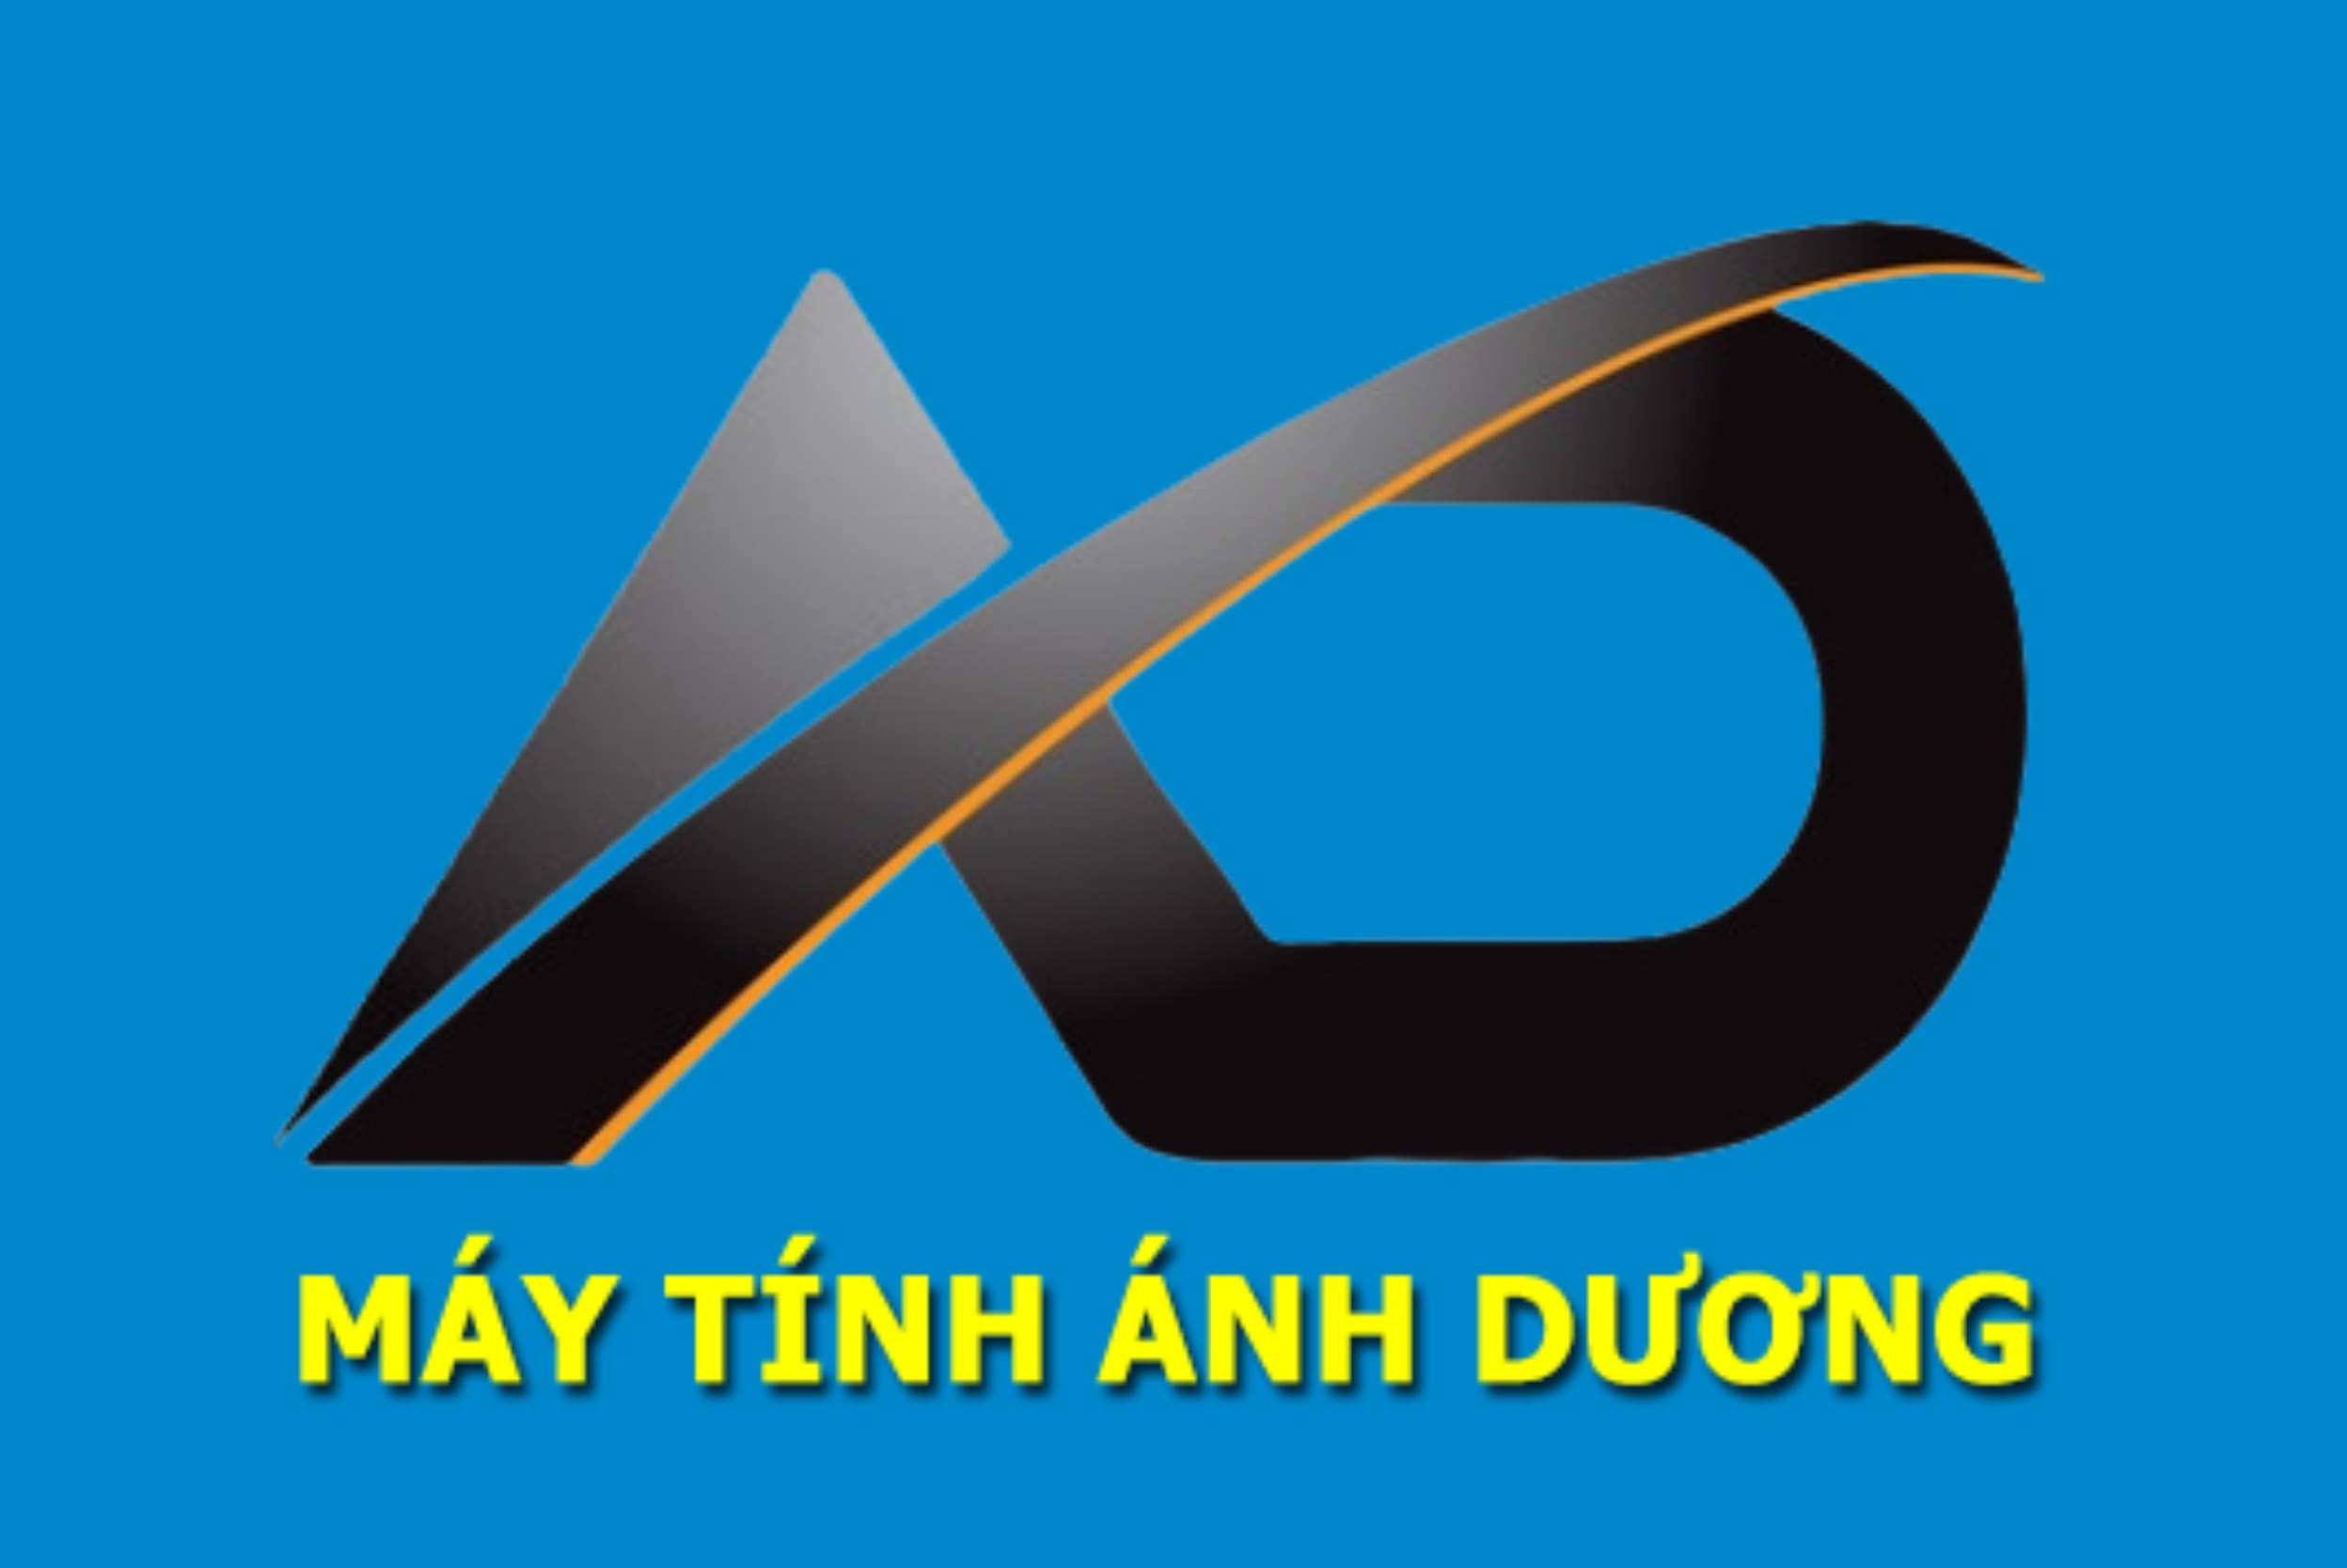 may-tinh-anh-duong-logo